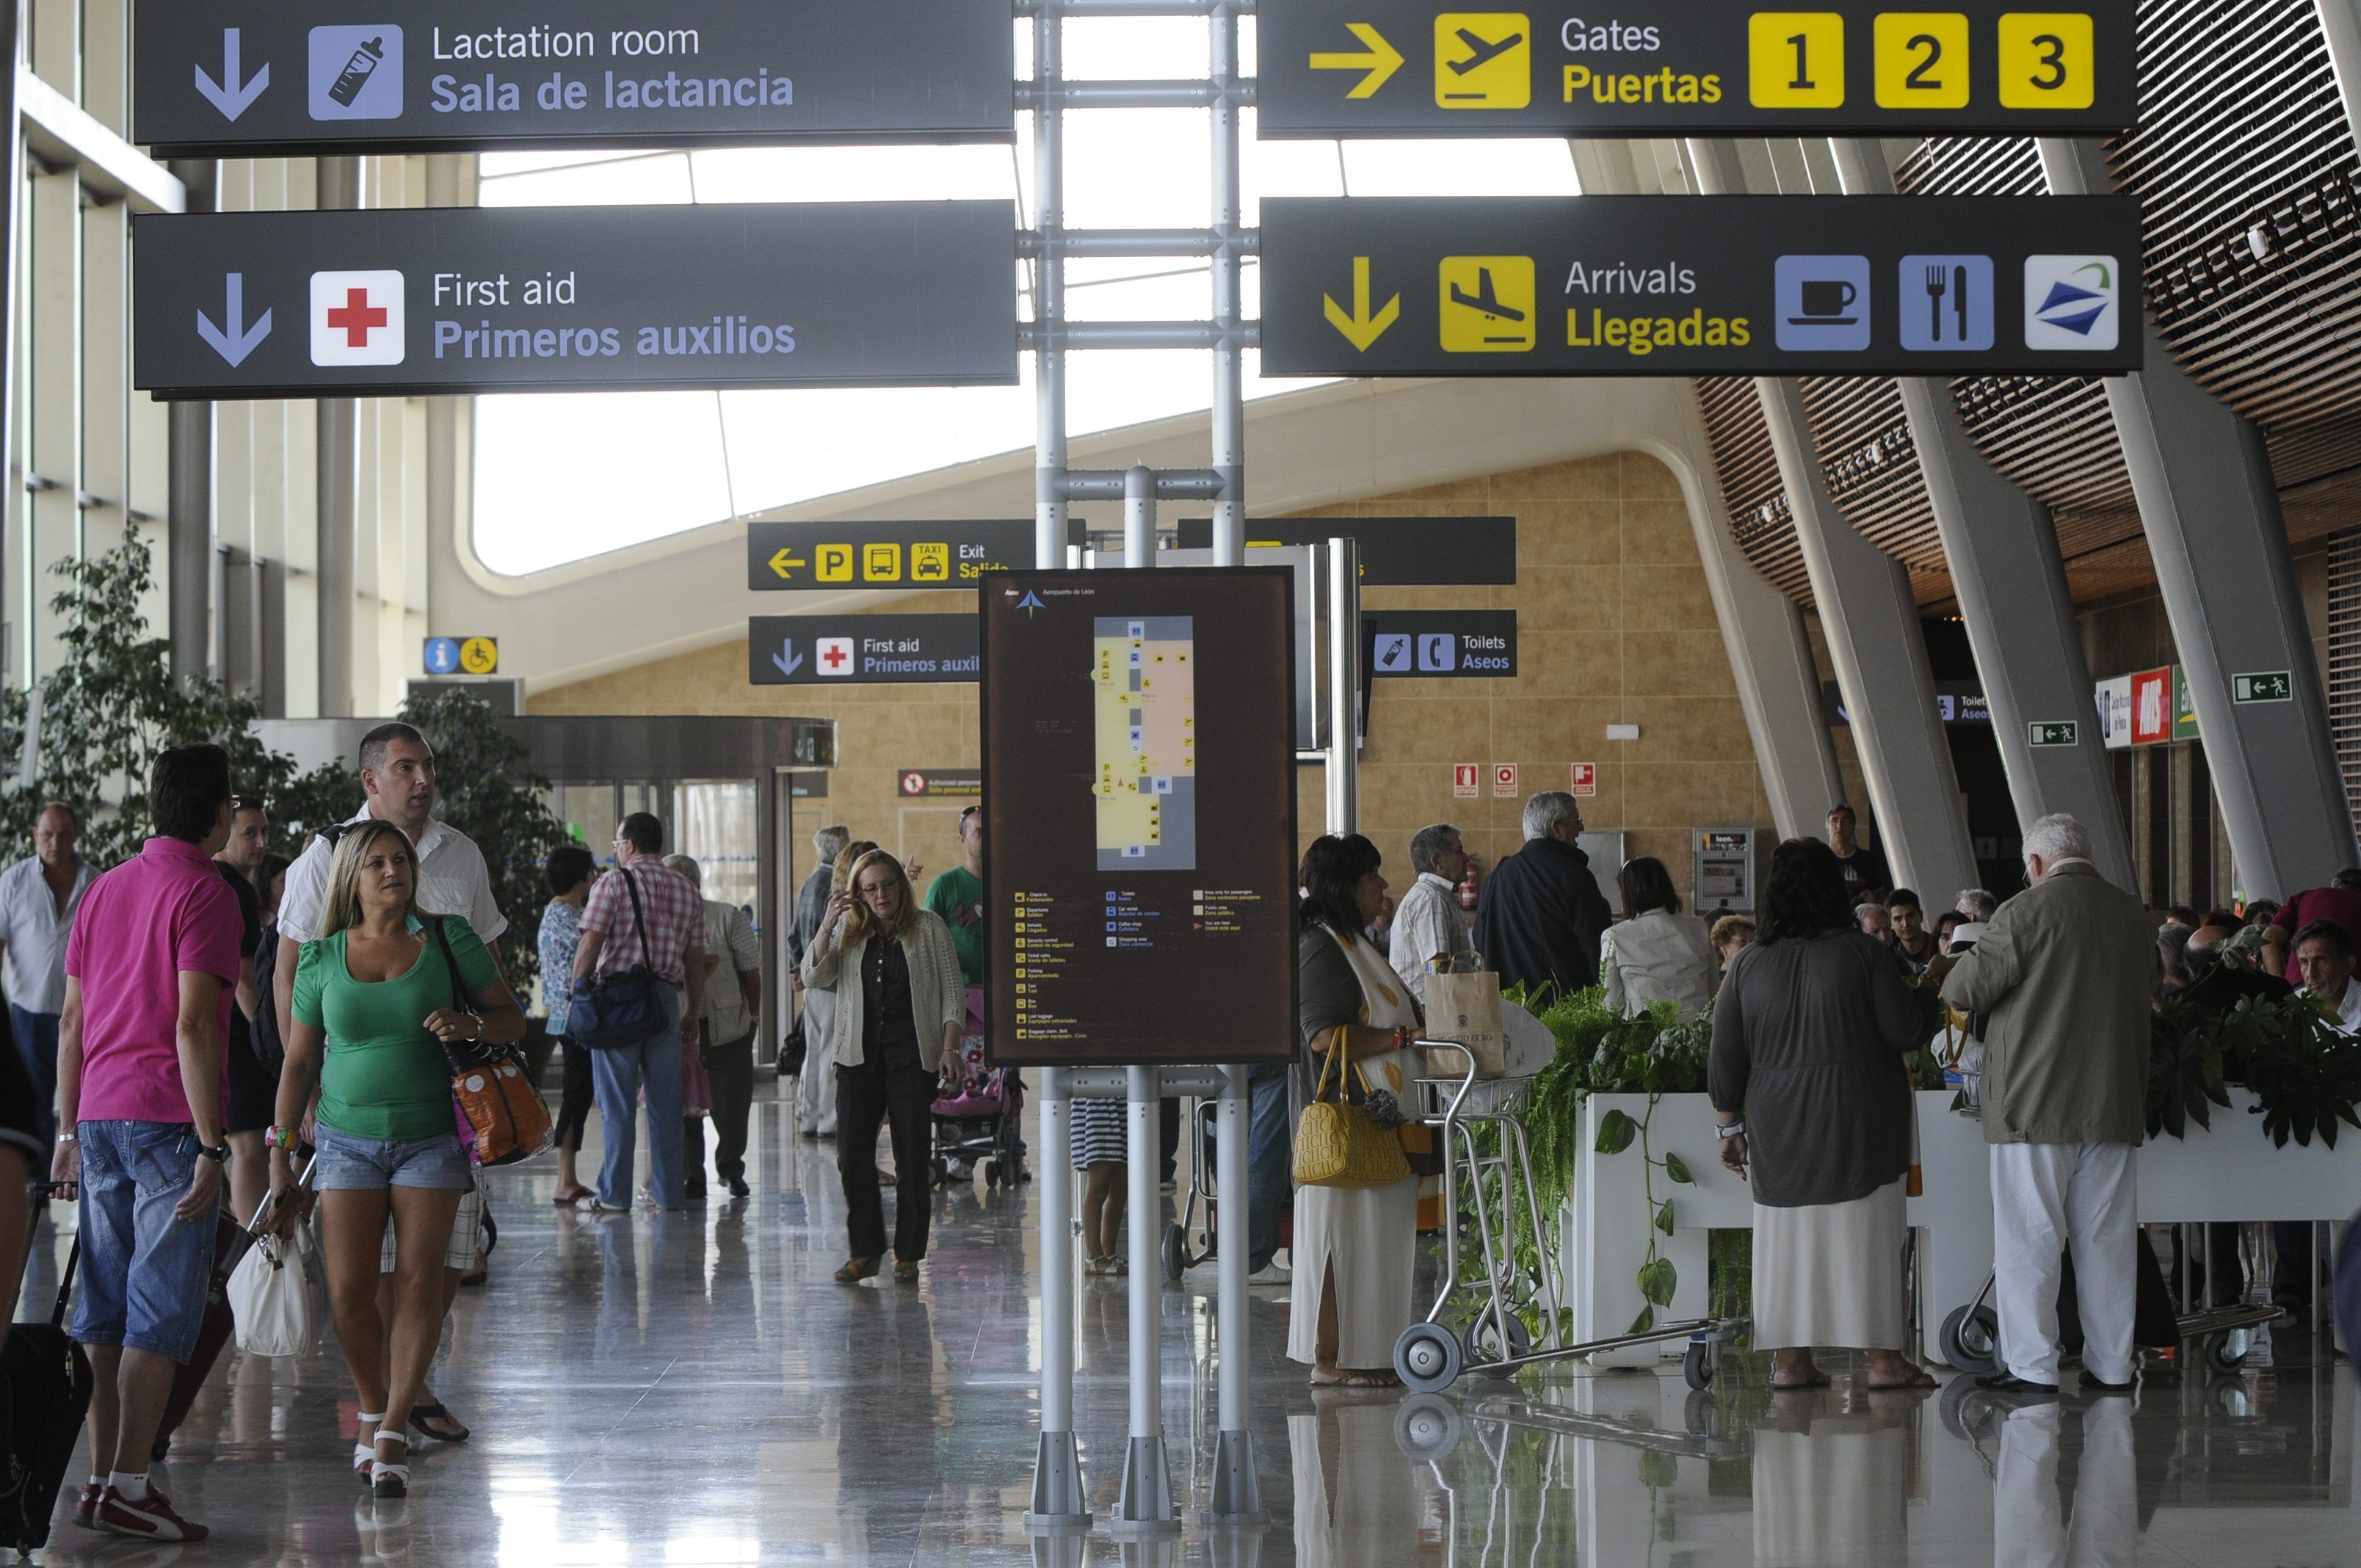 Terminal del aeropuerto de León en una imagen de archivo. |MAURICIO PEÑA